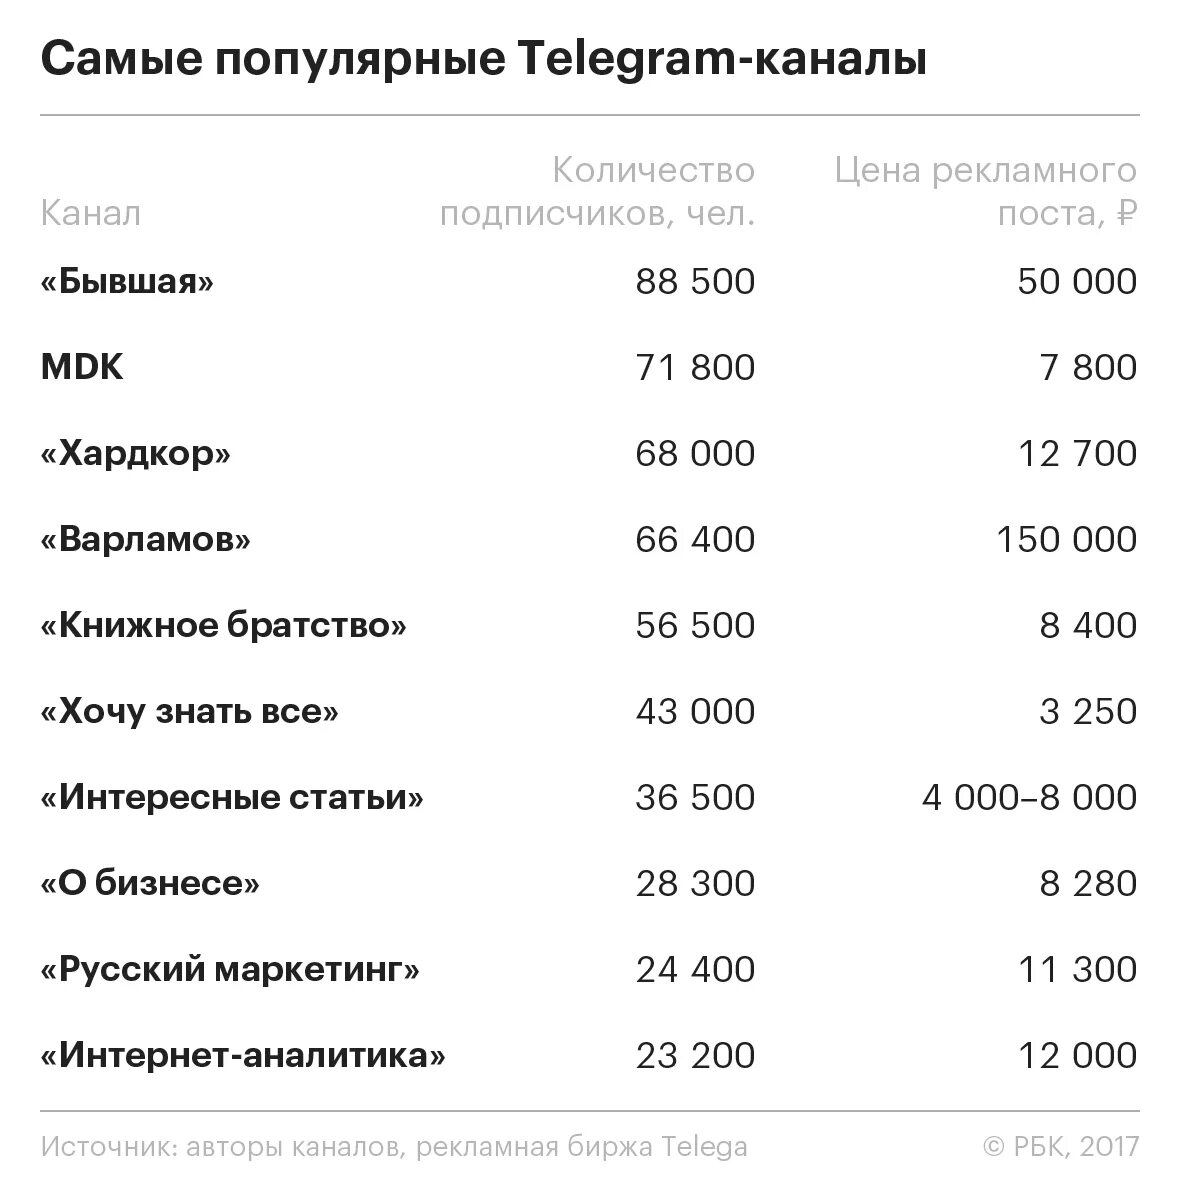 Тг каналы краснодар. Самый популярный Telegram канал. Популярные телеграм каналы. Самые популярные телеграм каналы. Популярныемканалы телеграм.